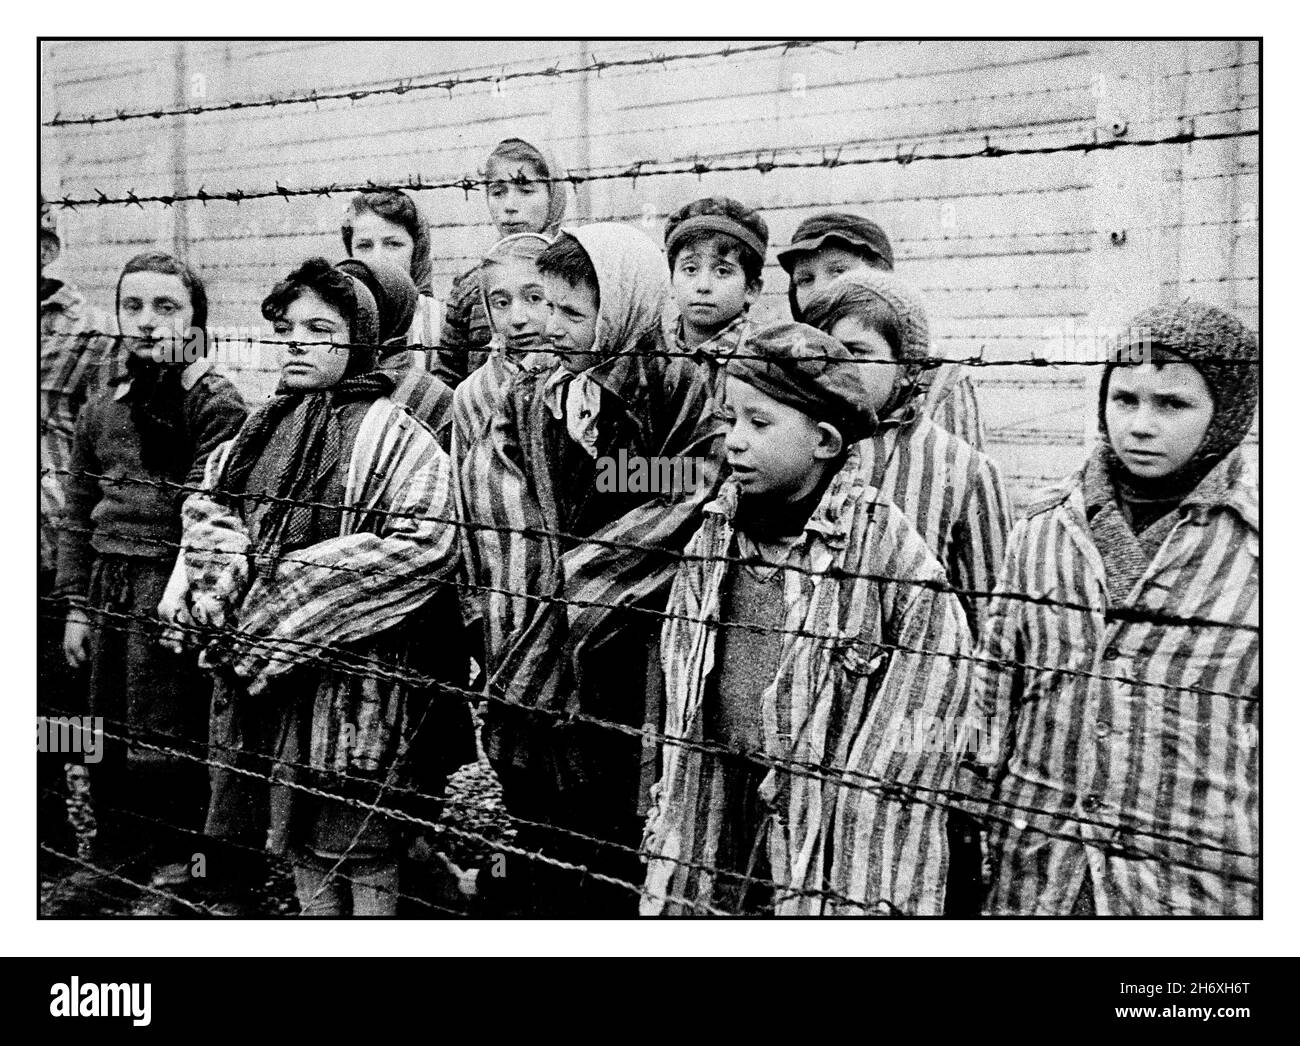 AUSCHWITZ 1945 KINDER GEFANGENE BEFREIUNG Kinderhäftlinge in gestreiften Uniformen starren hinter einem Stacheldrahtzaun in dem berüchtigten Nazi-Todeslager Auschwitz-Südpolen von WW2 auf ihre Befreier. Zweiter Weltkrieg Kindergefangene Überlebende des Konzentrationslagers Auschwitz in gestreiften Häftlingsjacken in Erwachsenengröße stehen hinter einem Stacheldrahtzaun. Stockfoto